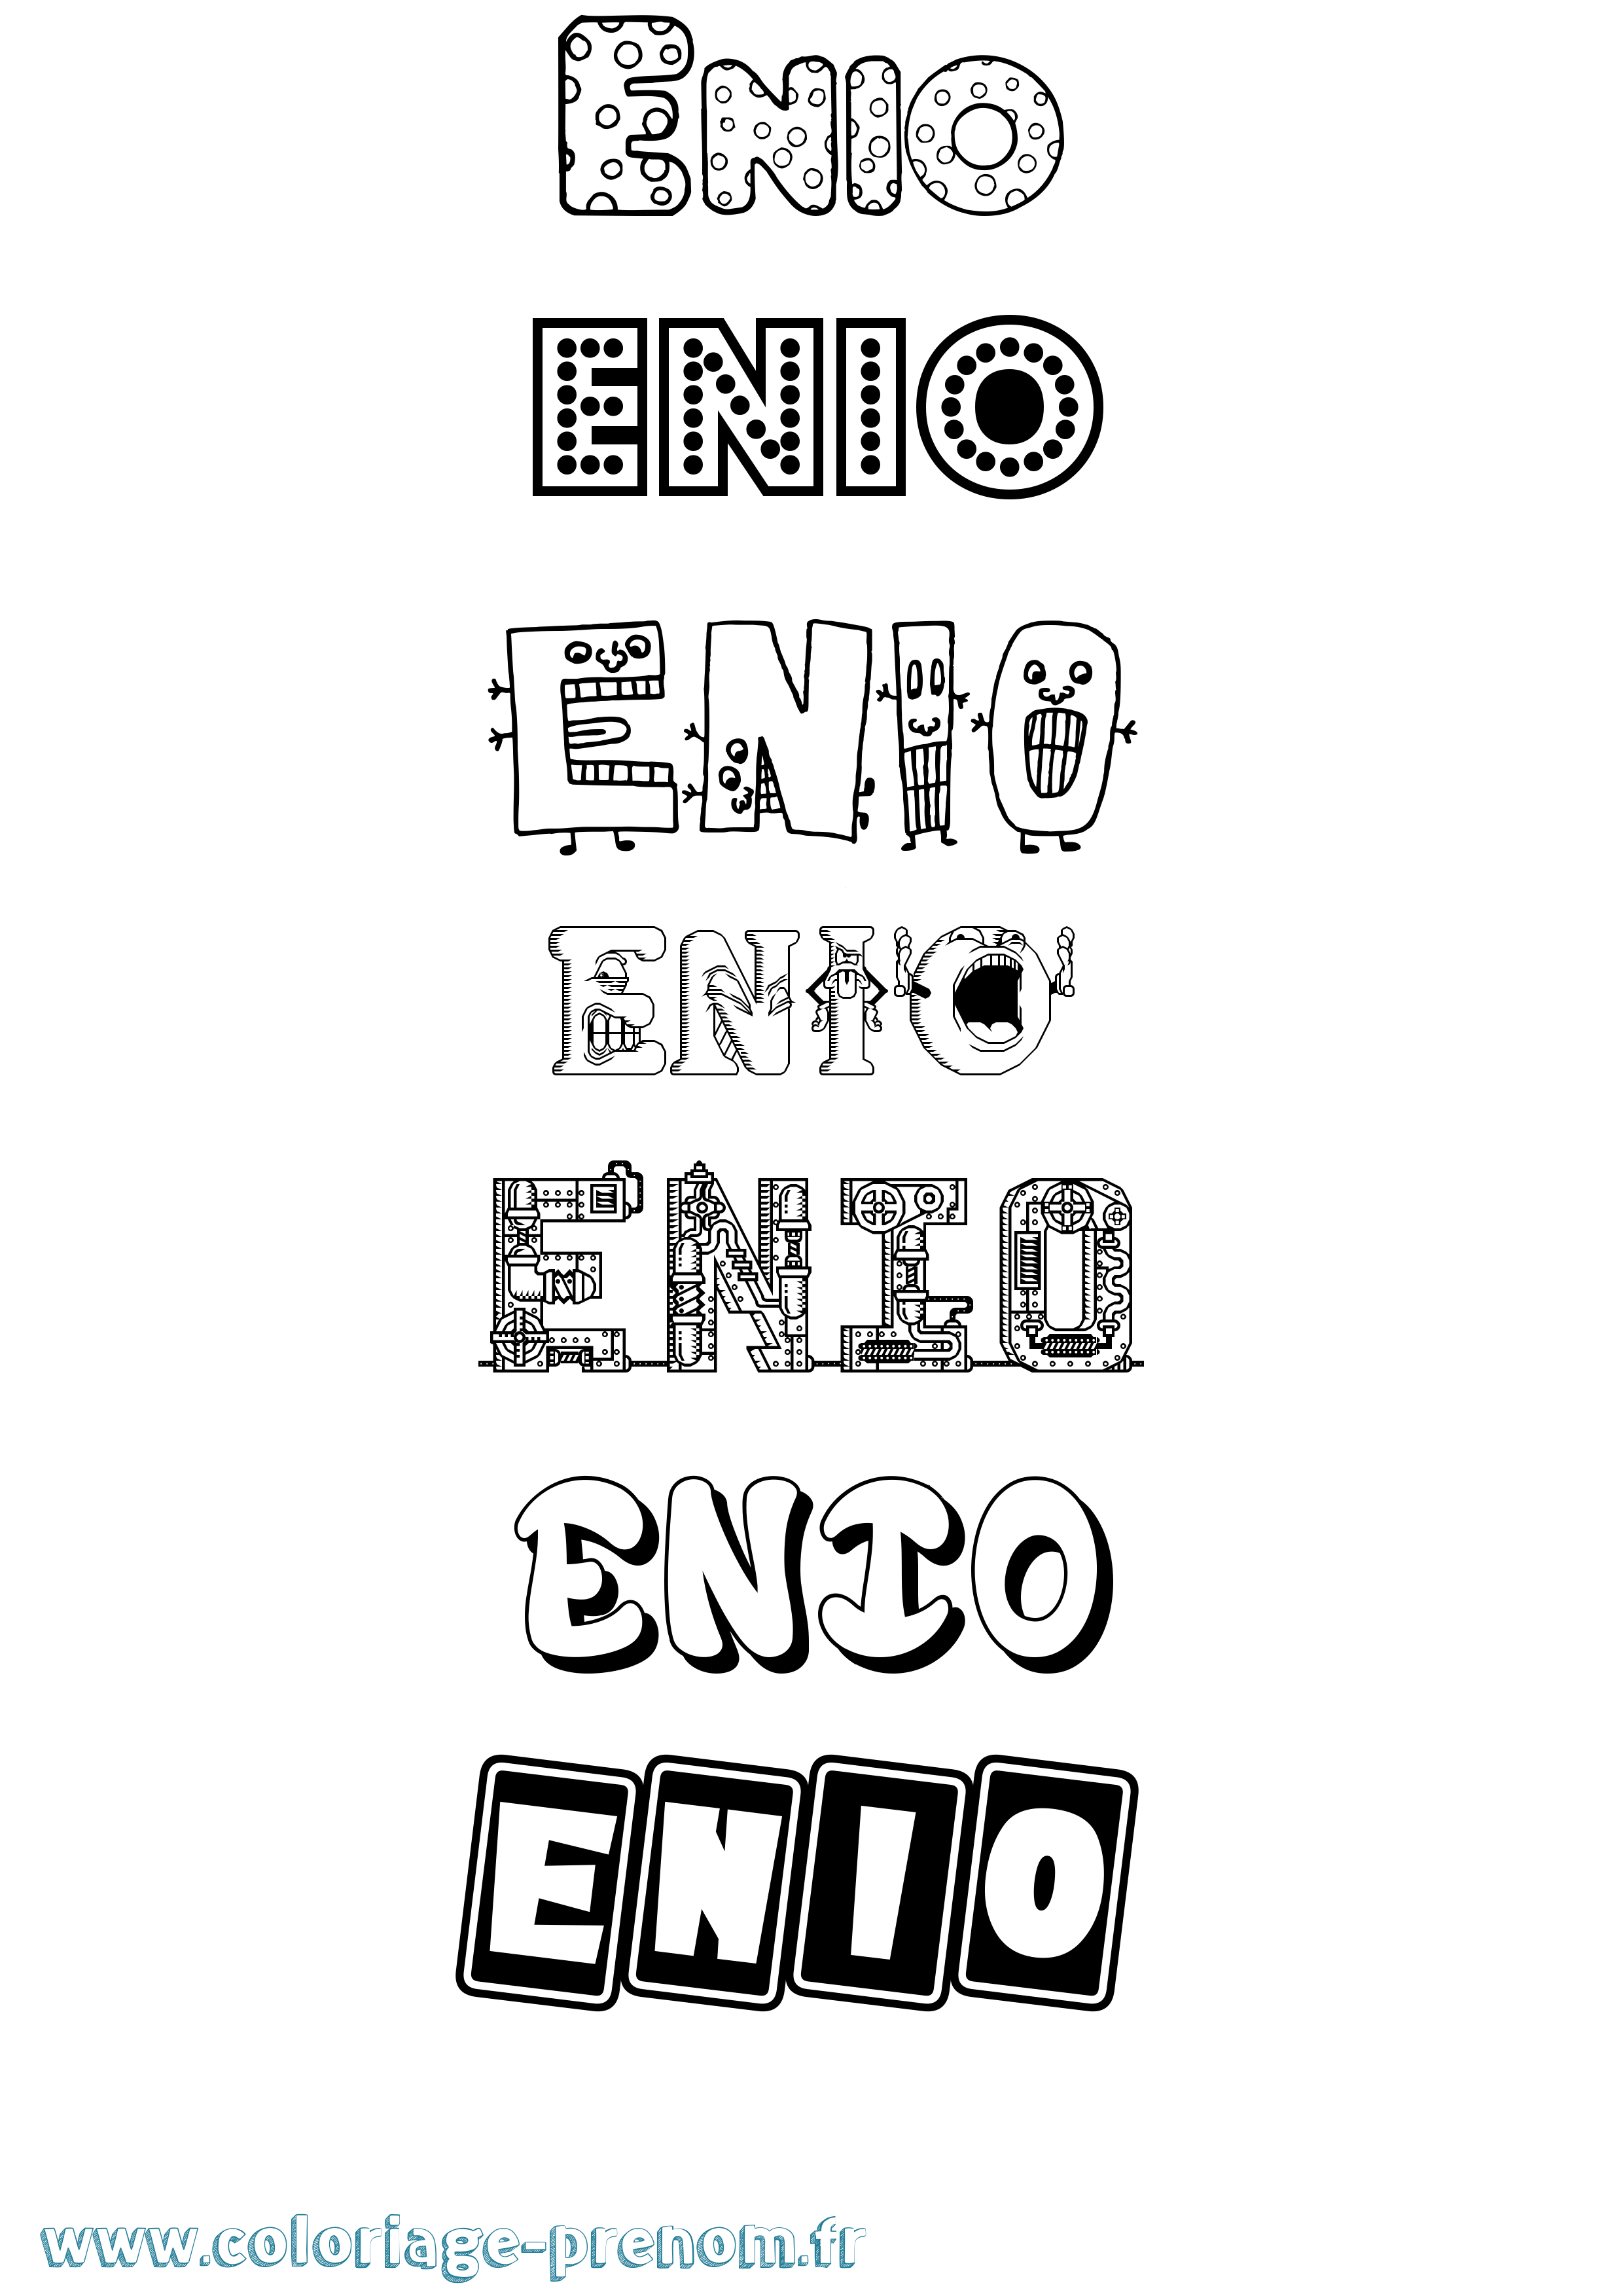 Coloriage prénom Enio Fun